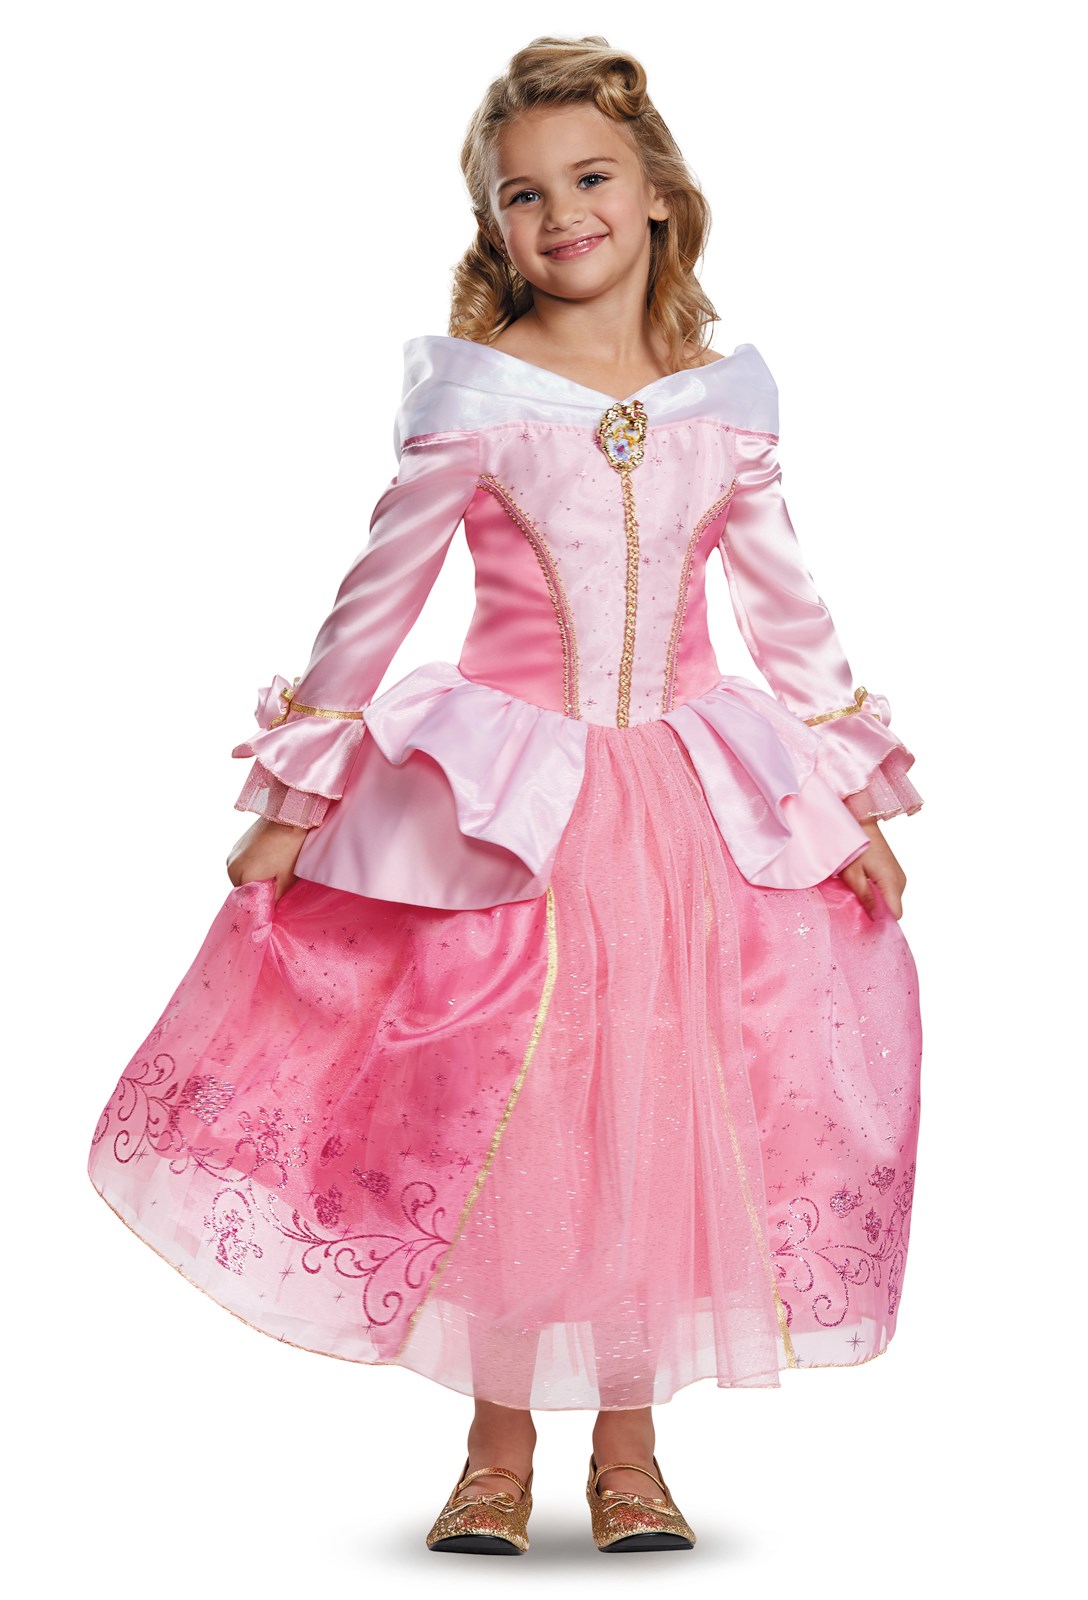 Disney Storybook Aurora Prestige Toddler / Child Costume